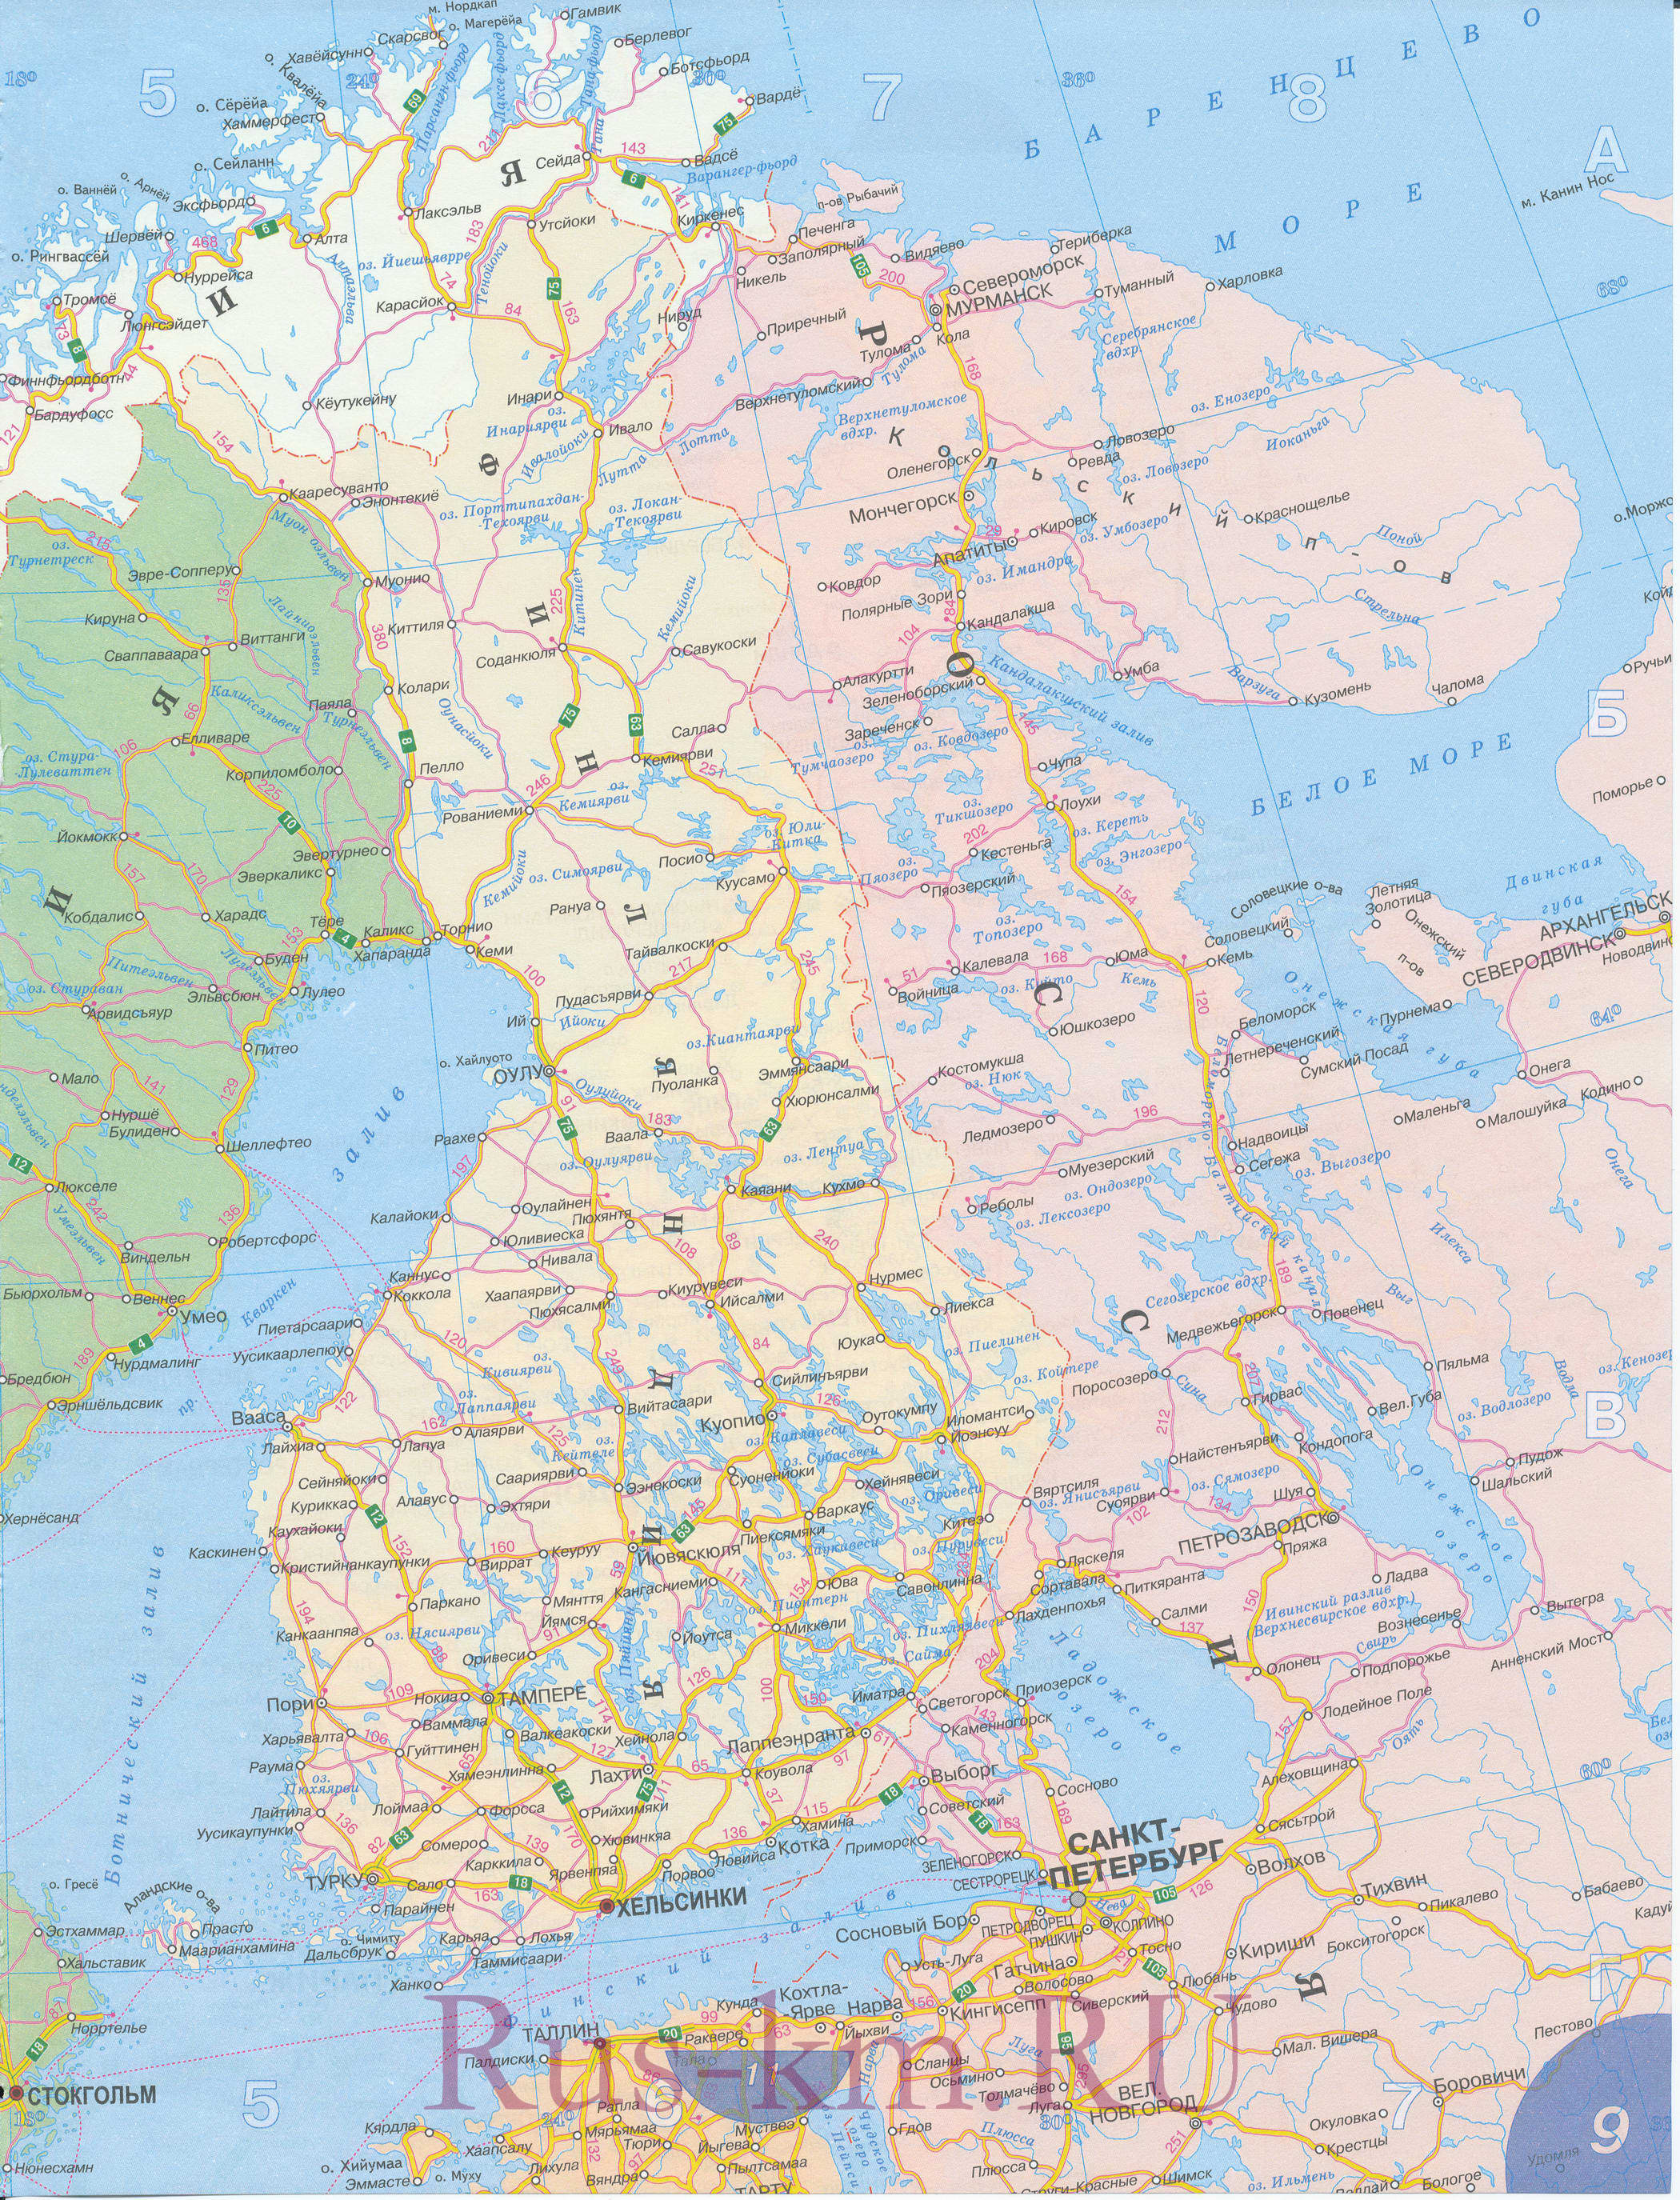 Карта дорог северной Европы. Подробная карта автодорог Северной Европы на русском языке - Норвегия, Швеция, Финляндия, Исландия, B0 - 